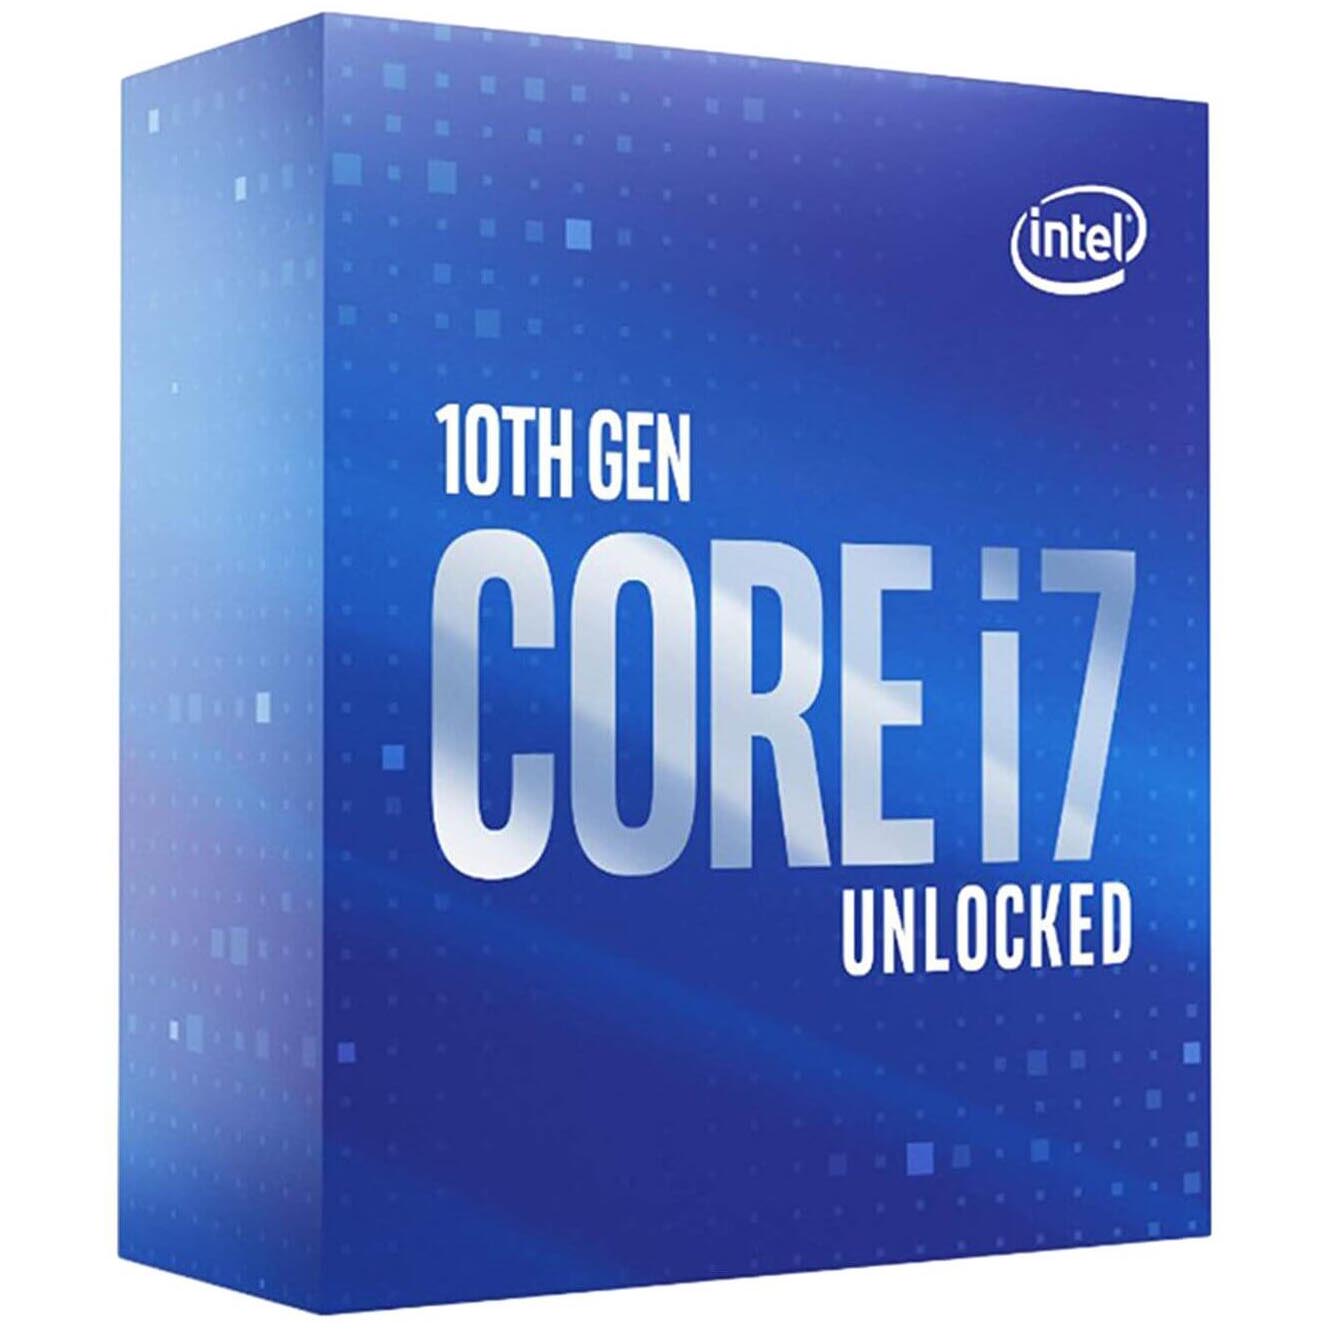 Процессор Intel Core i7-10700KF BOX (без кулера), LGA 1200 процессор intel original core i7 10700kf bx8070110700kf s rh74 box